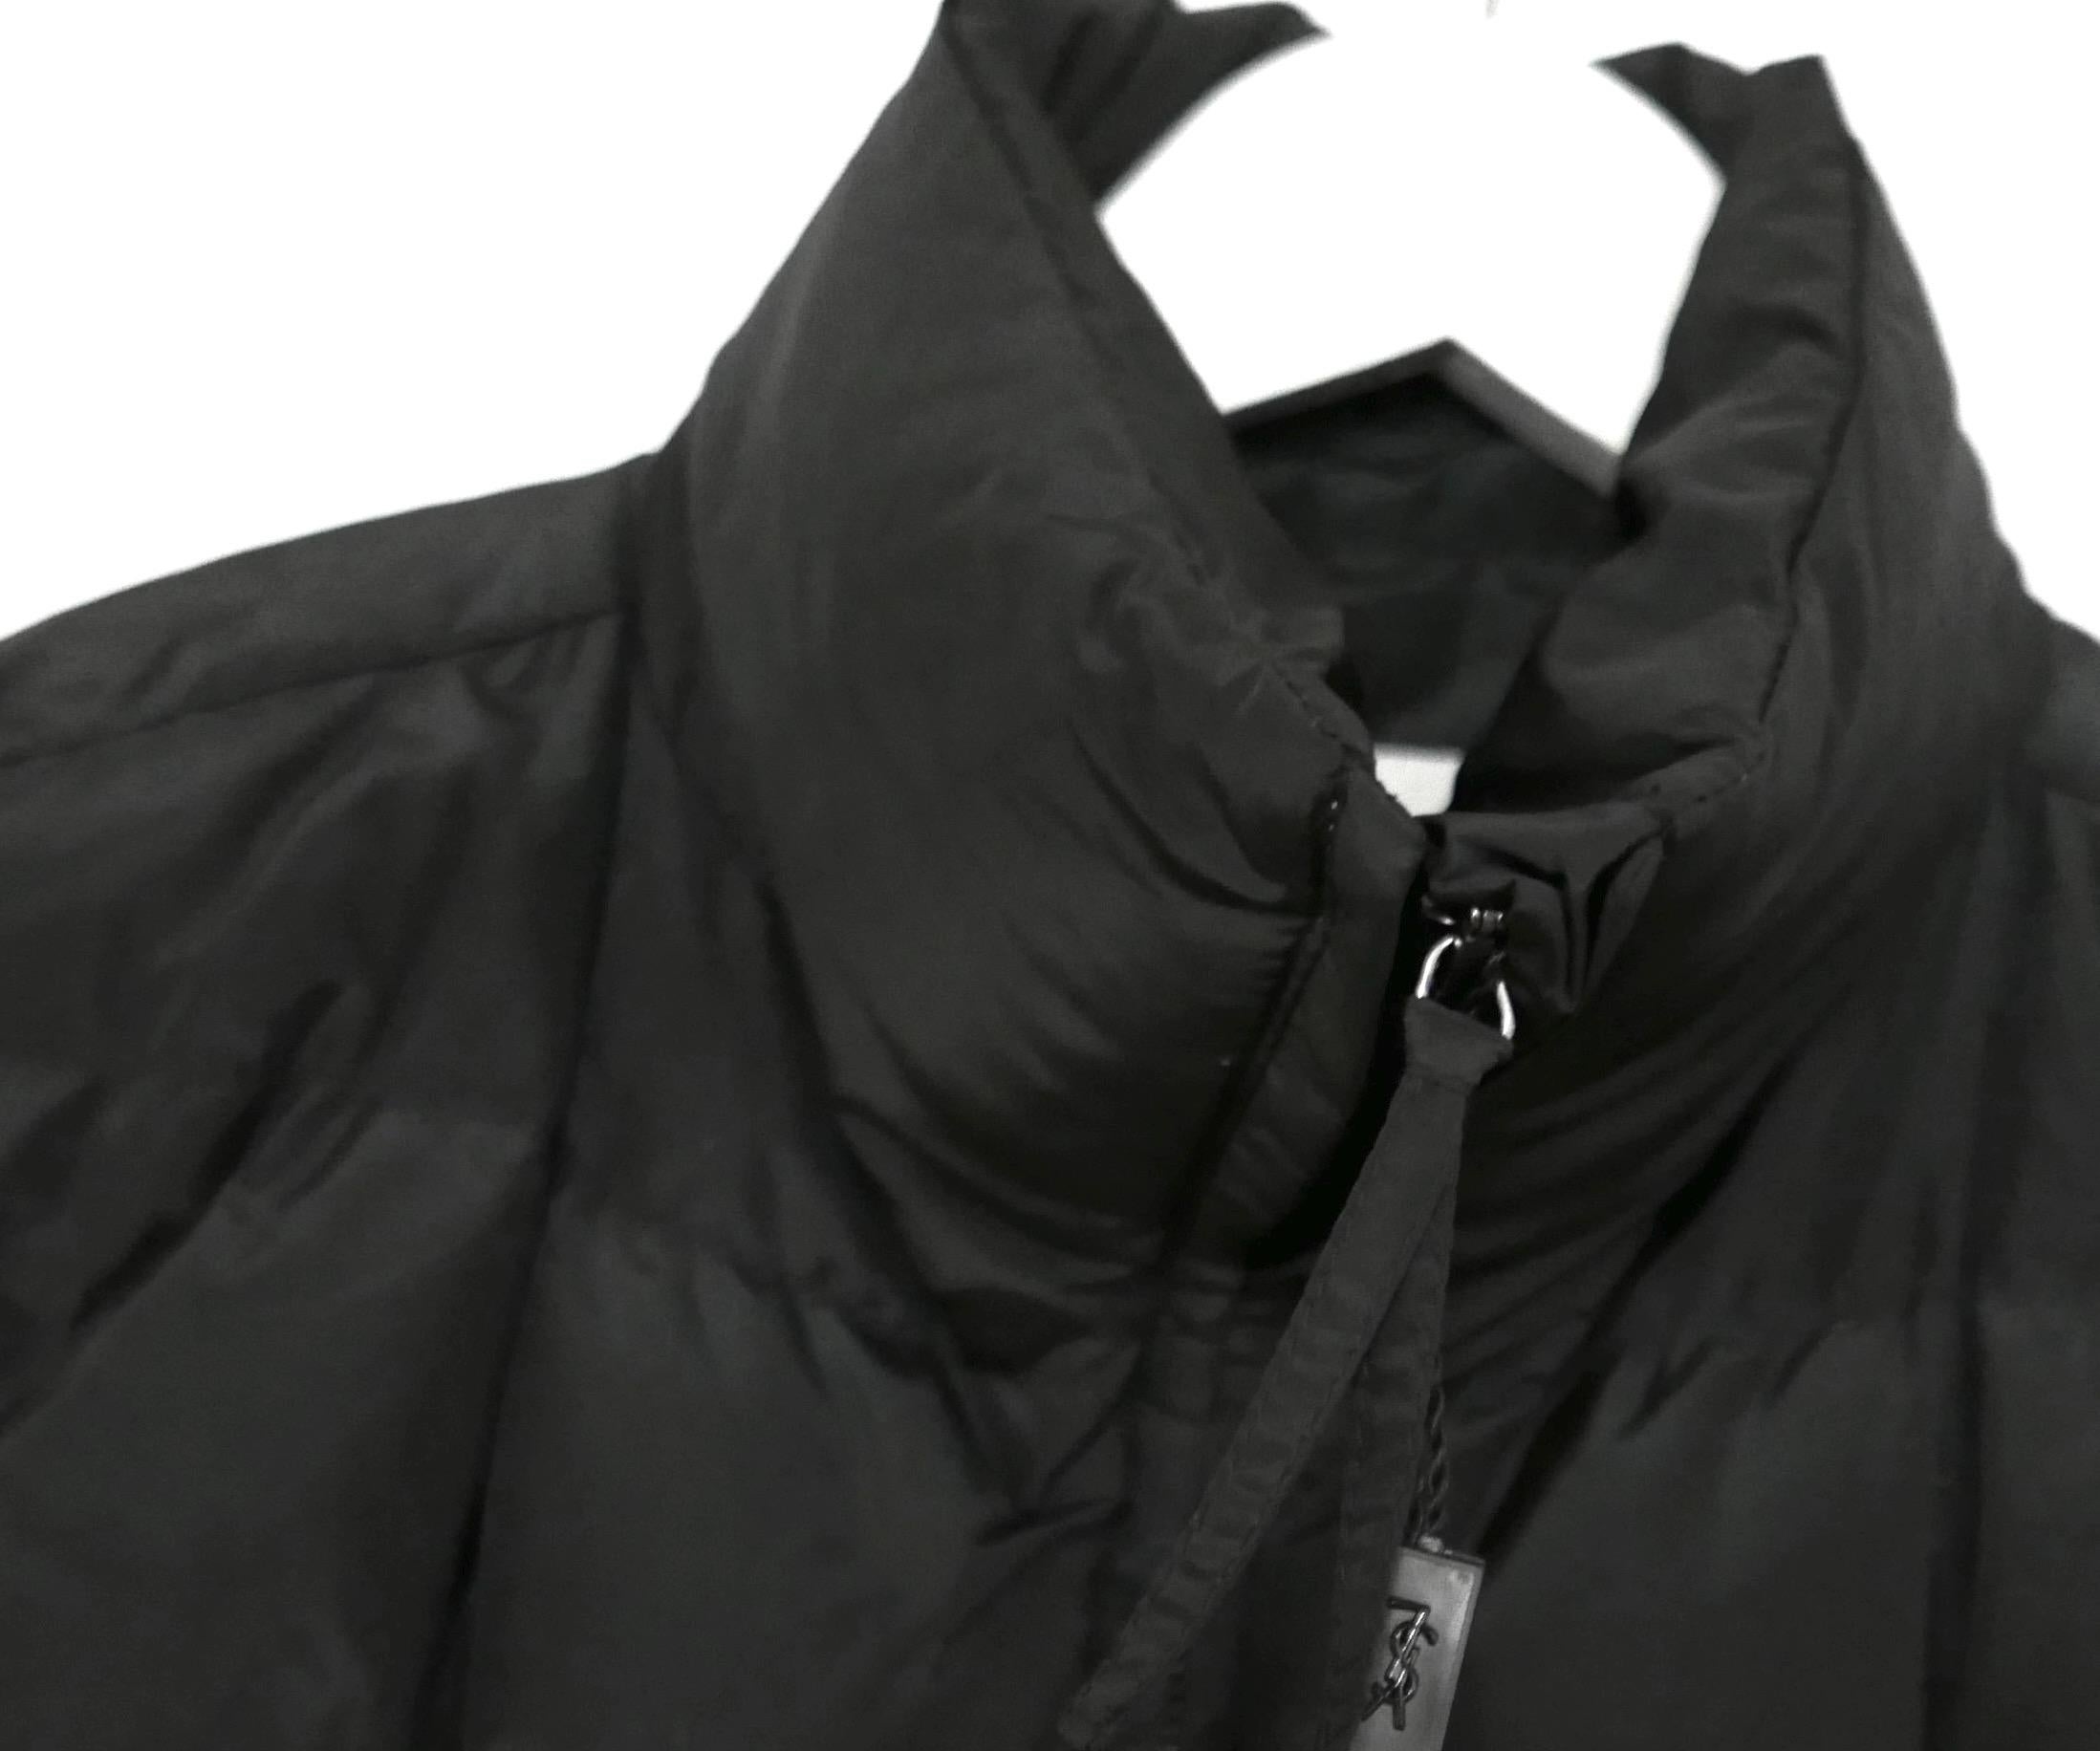 Superbe veste polaire d'archive Yves Saint Laurent - collection Pre-Fall 2009 de Stefano Pilati. En fabuleux état, non porté, avec une petite étiquette en plastique encore attachée. Magnifiquement confectionné en polyester noir doux et matelassé de